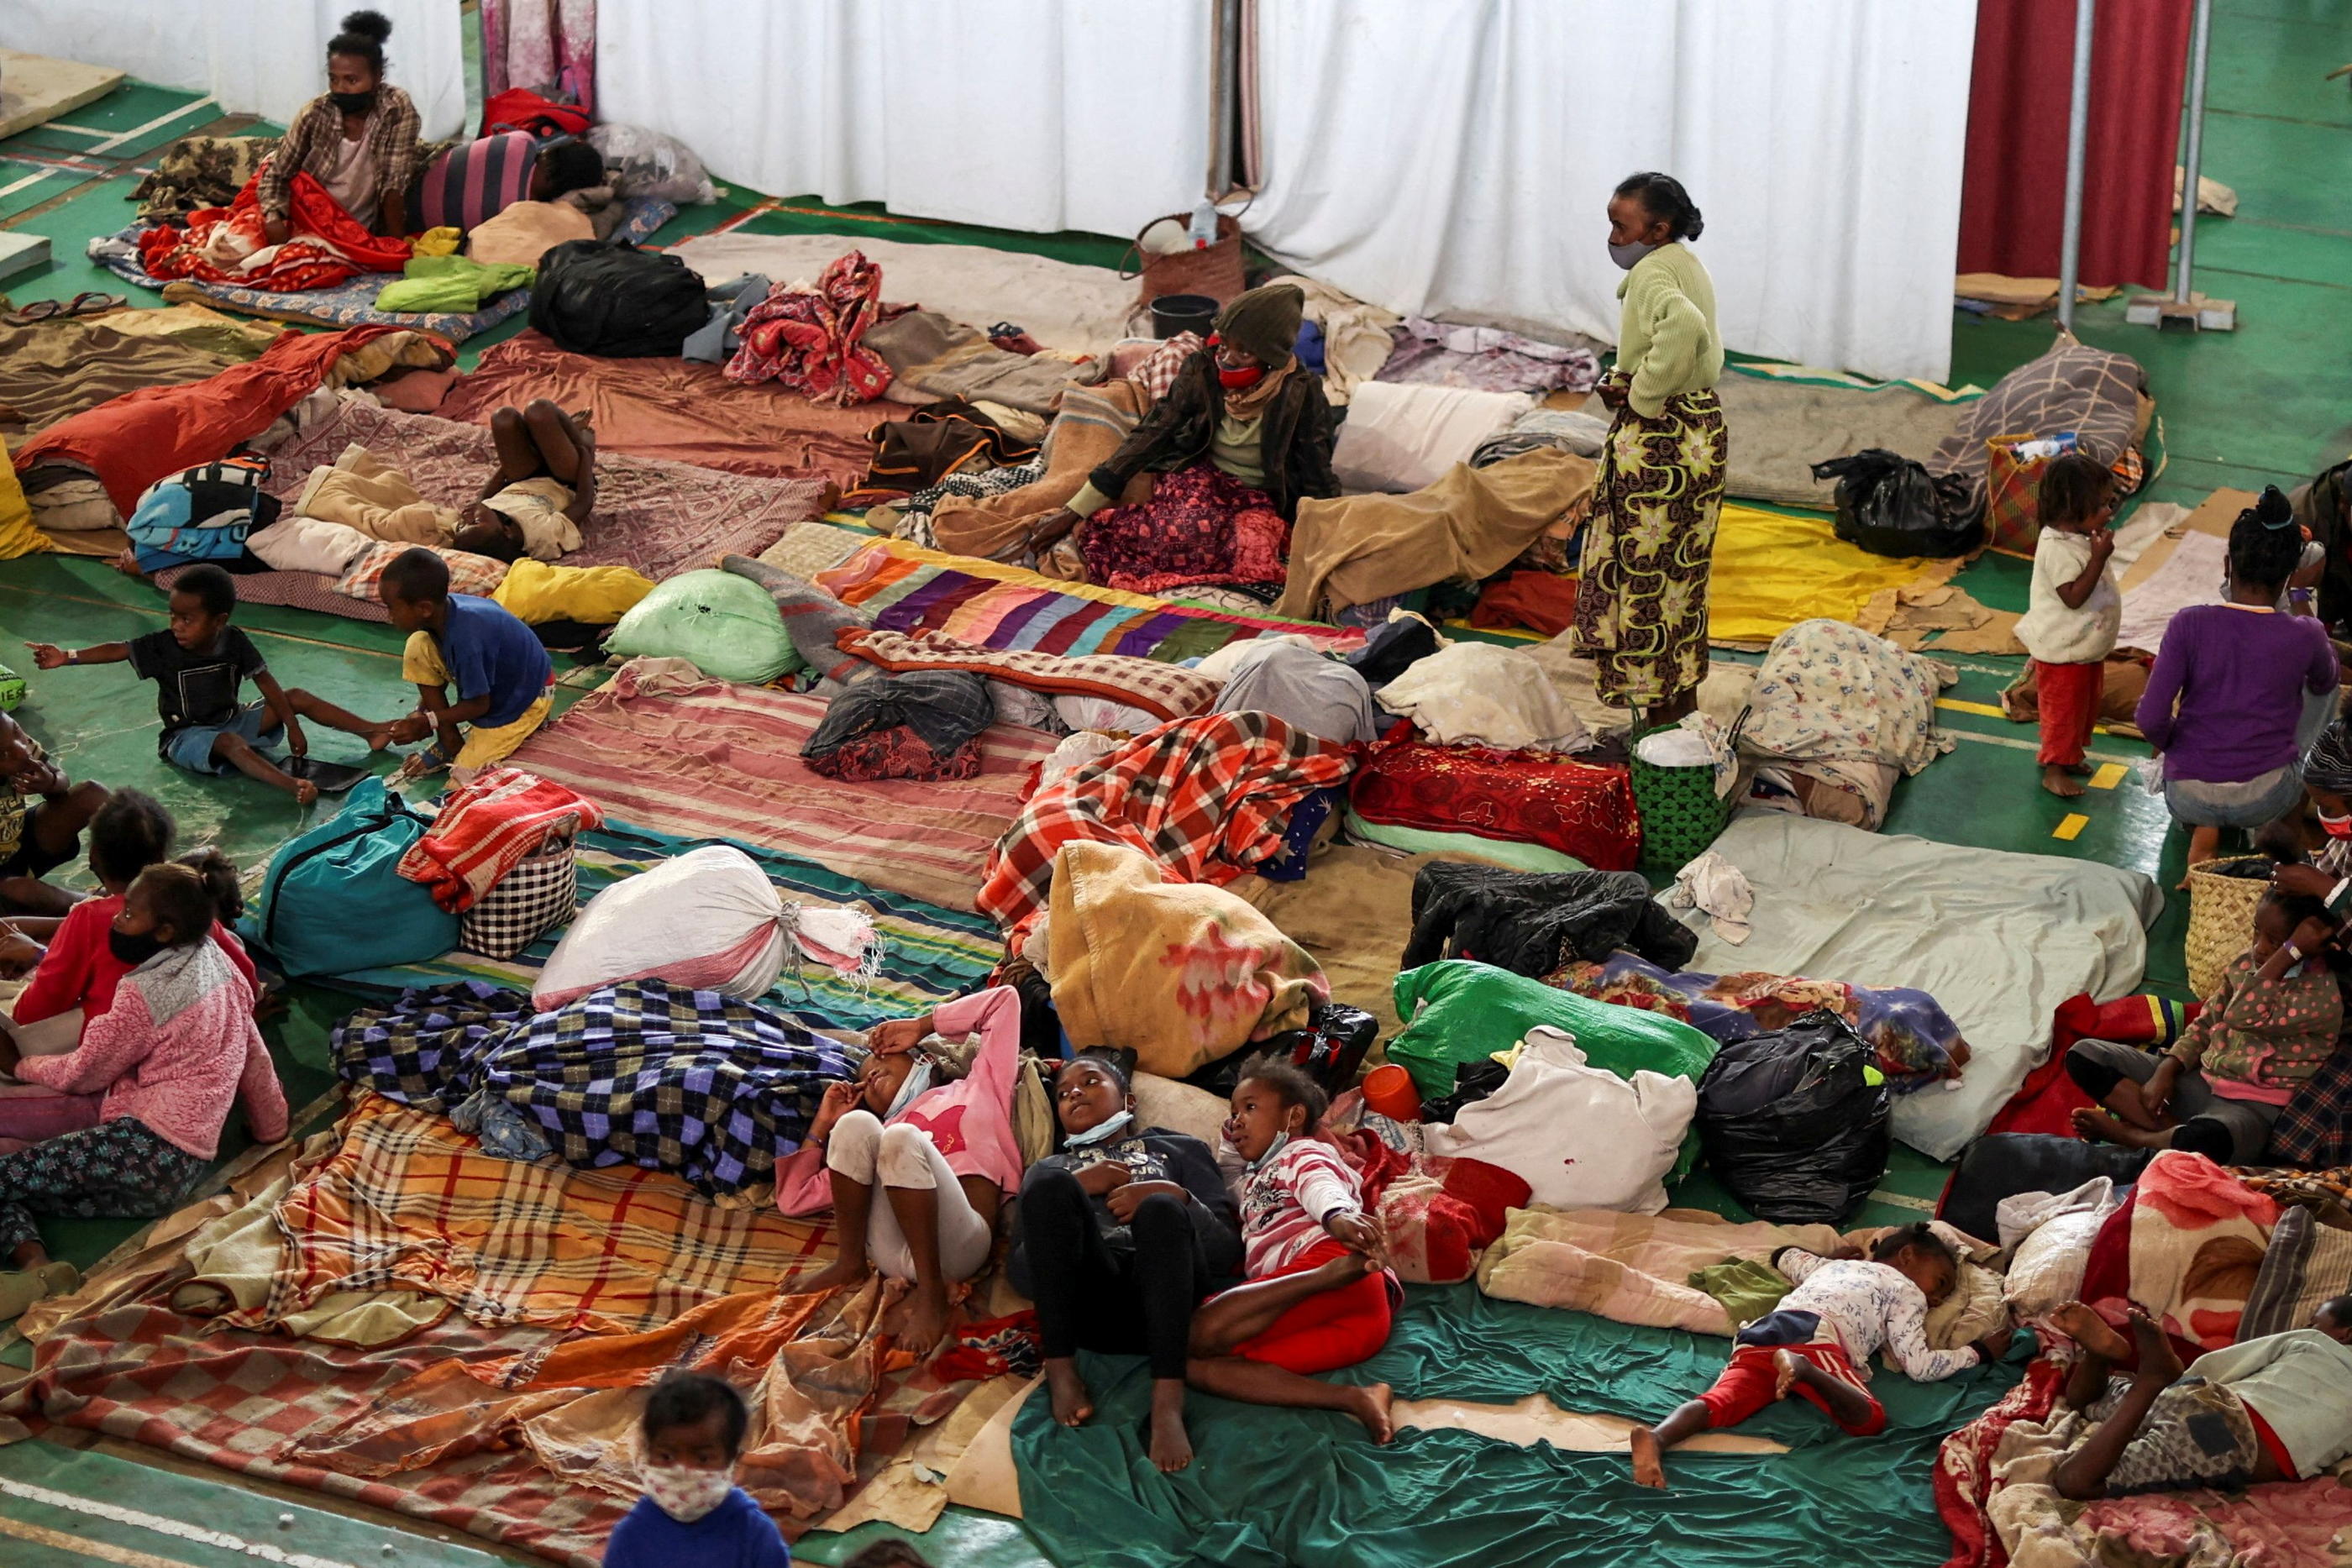 De nombreuses personnes ont été obligées de se réfugier dans des abris pendant le passage du cyclone Batsirai. REUTERS/Alkis Konstantinidis